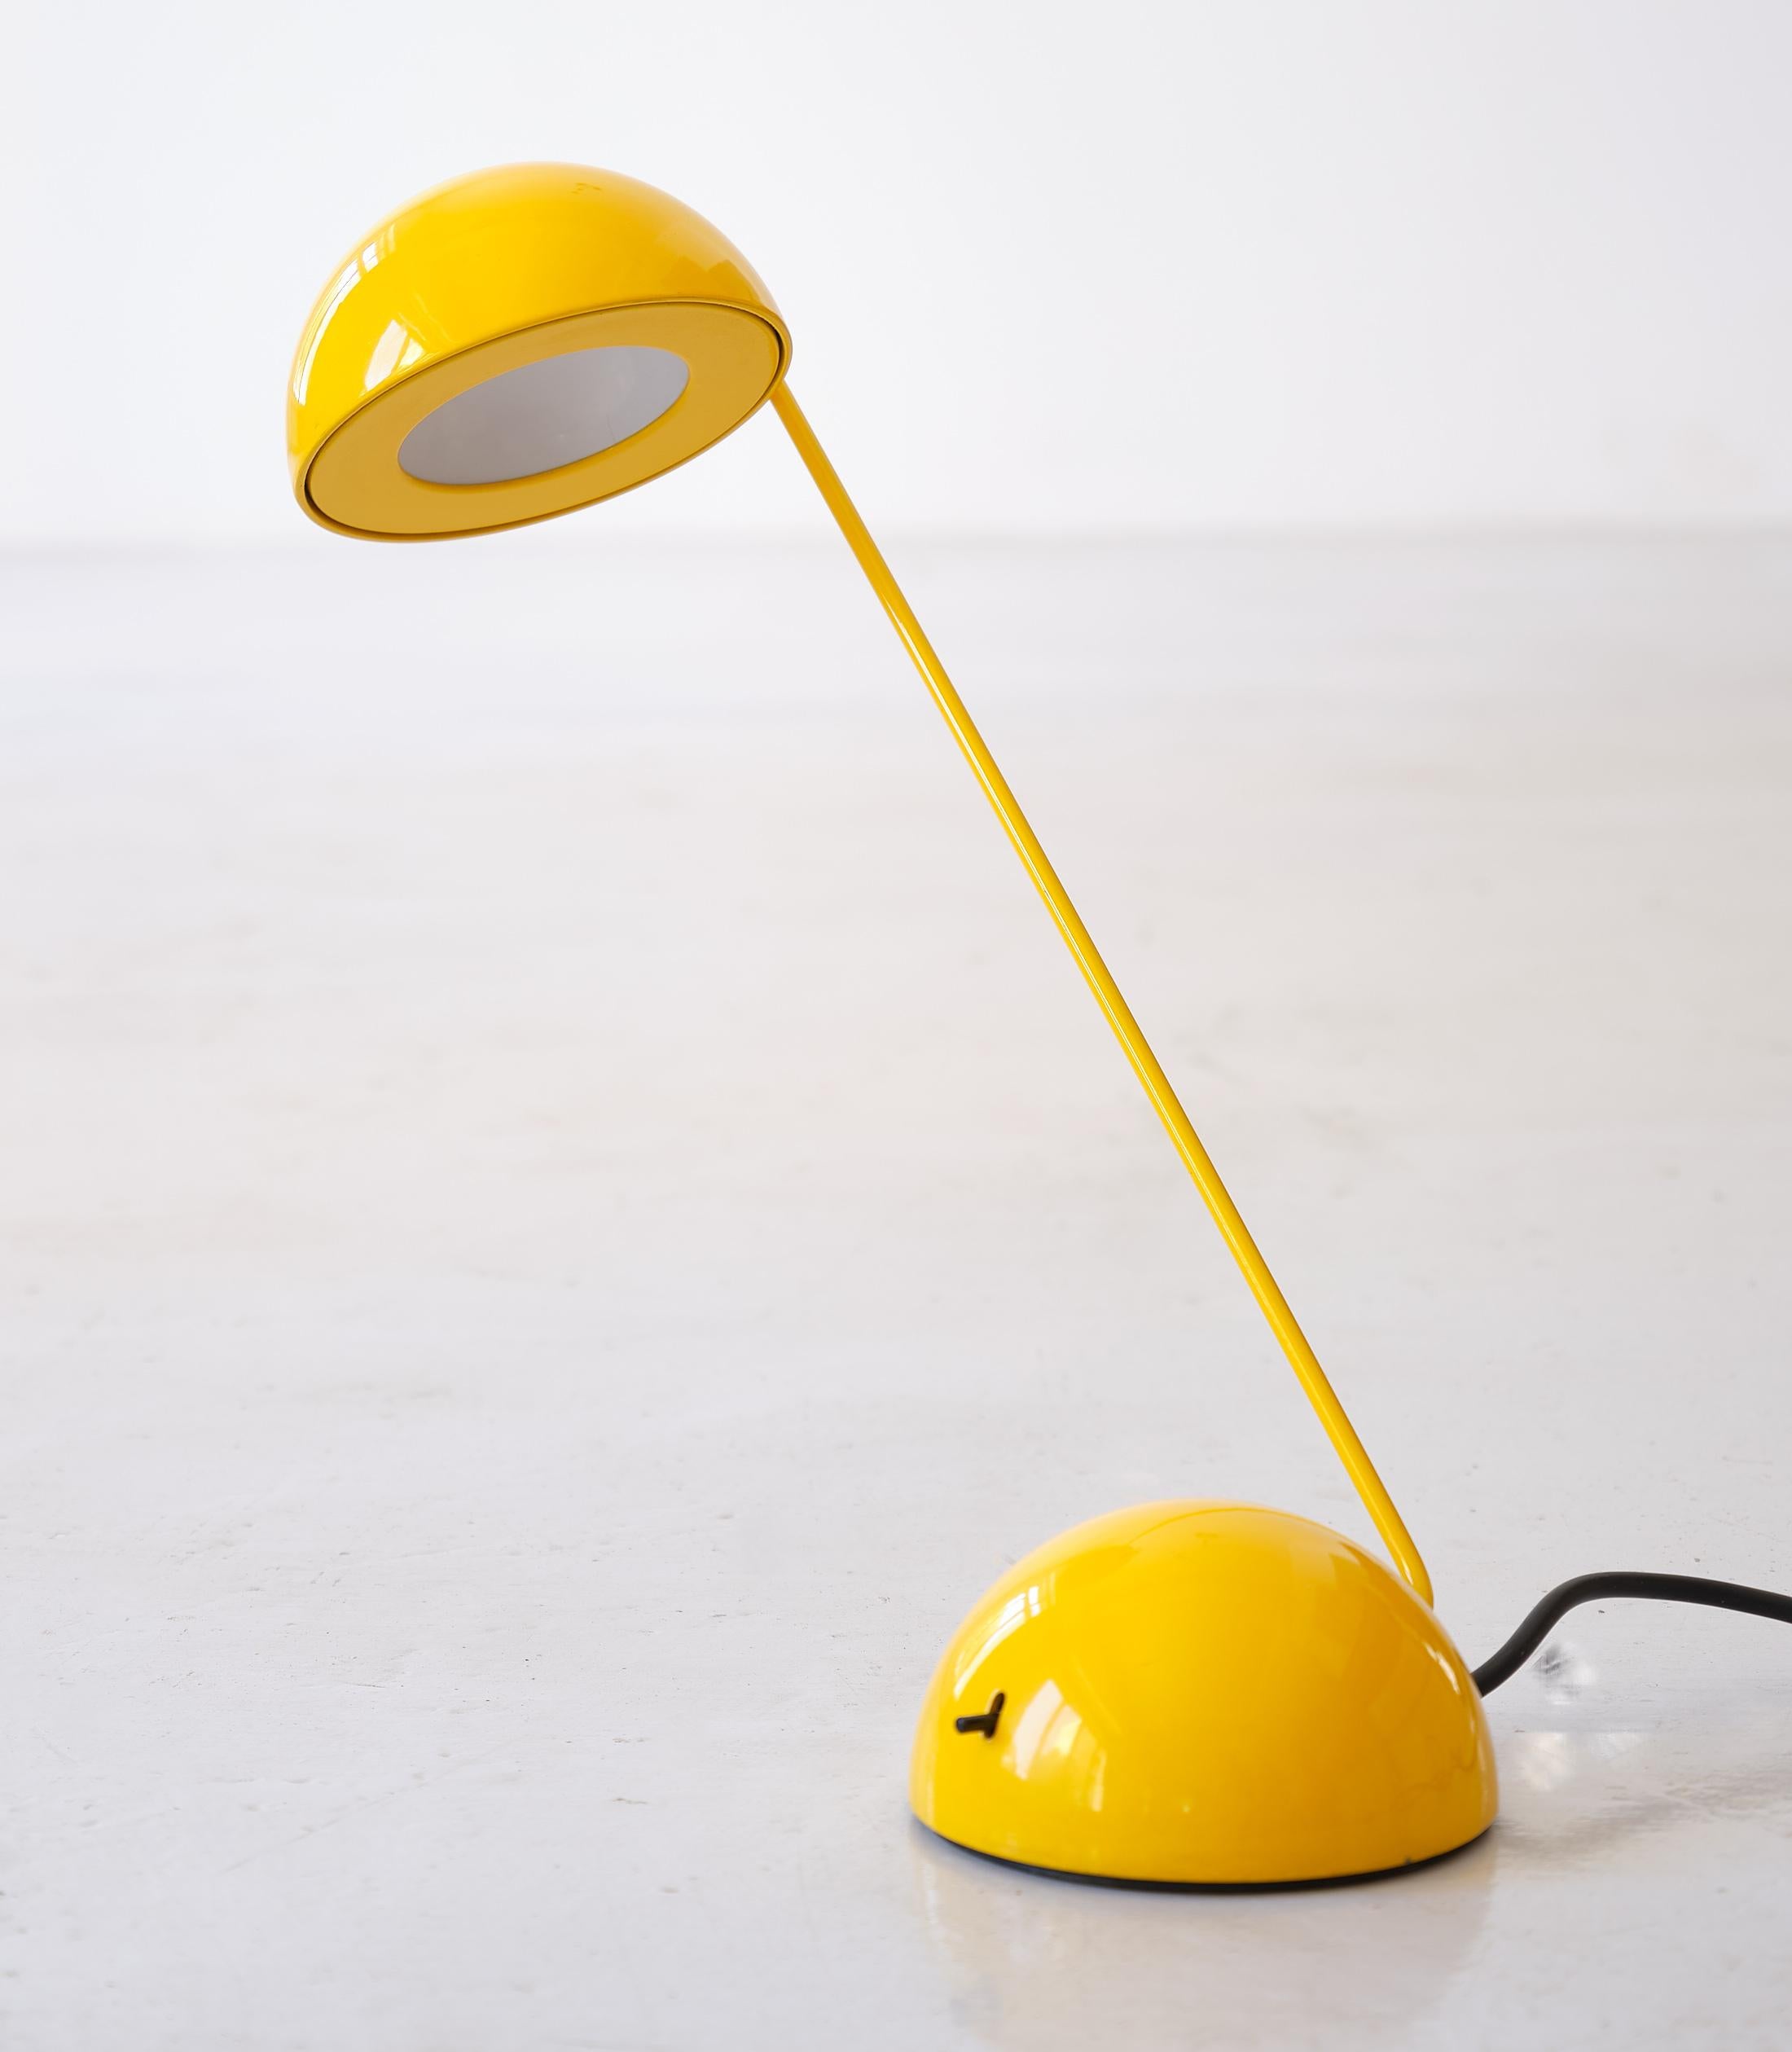 Lampes de table 'Bikini' de Barbieri & Marianelli pour Tronconi.
Fabriqué en Italie dans les années 1980

La tige et le chapeau de cette lampe peuvent être placés dans différentes positions


Fil de fer d'origine.